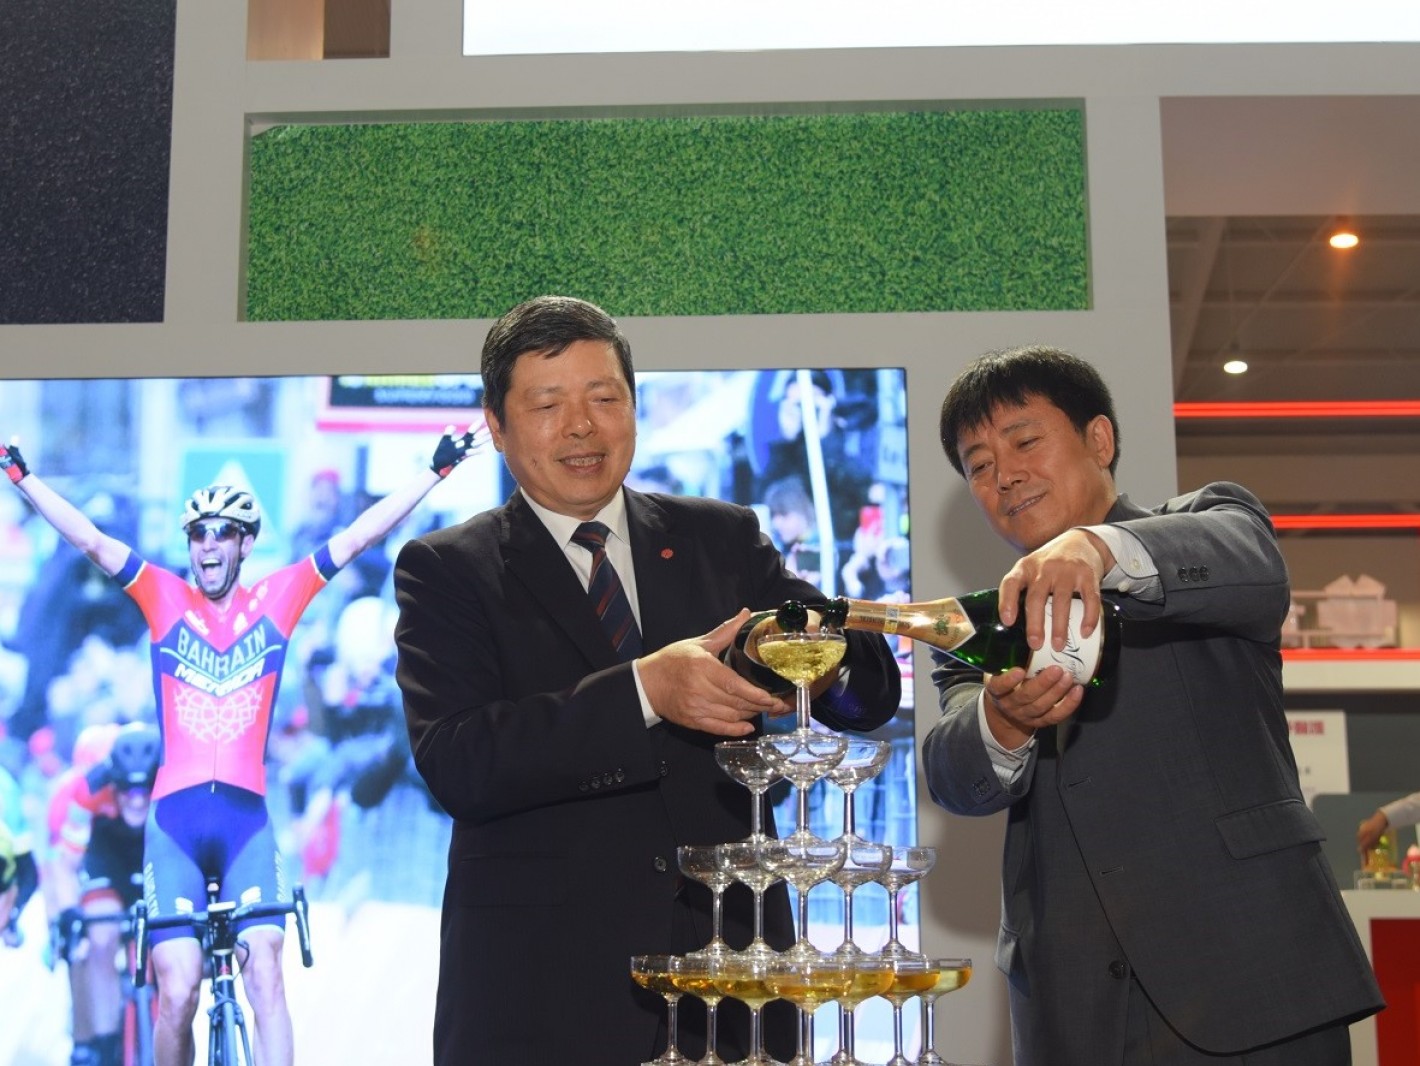 台湾精品馆媒体见面会由云南省工商联代表与台湾贸易中心叶明水秘书长一同主持香槟塔仪式